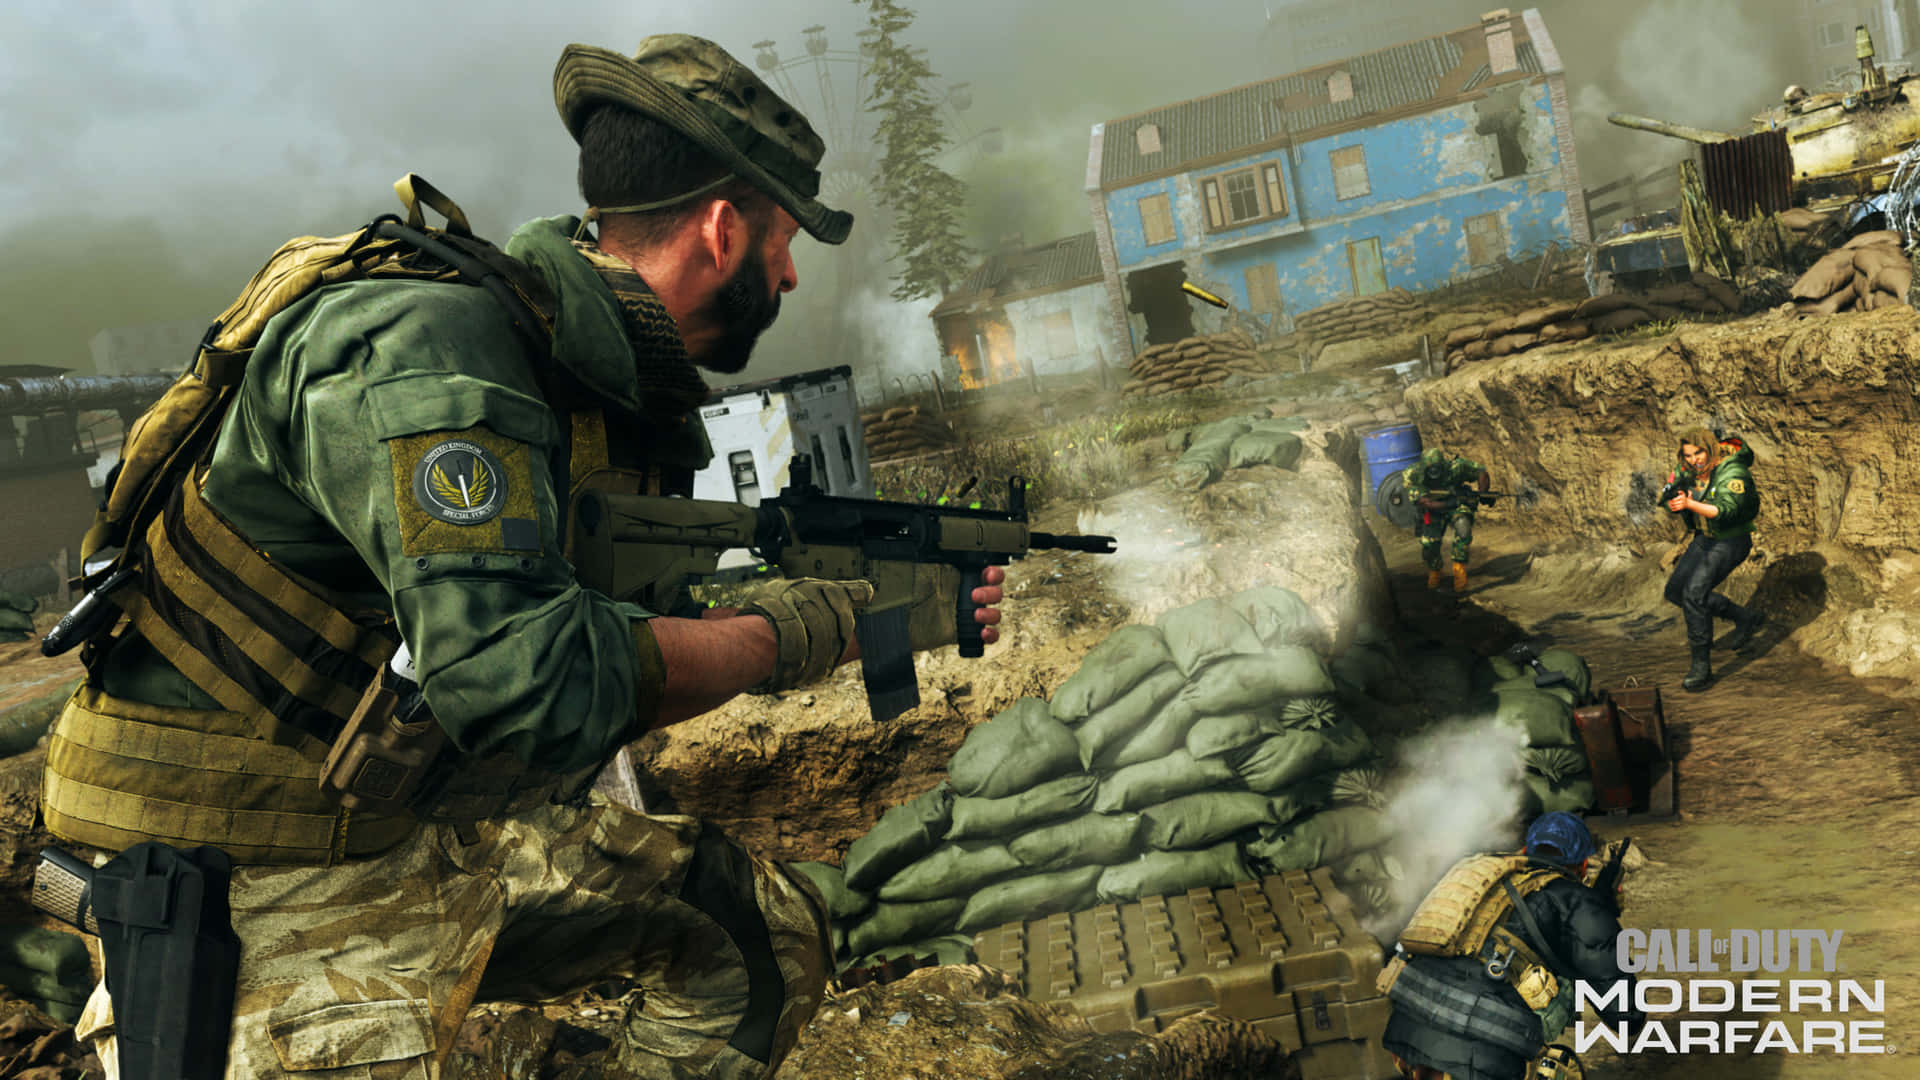 Fördjupadig I Den Inlevelsefulla Världen Av Hd Call Of Duty Modern Warfare.